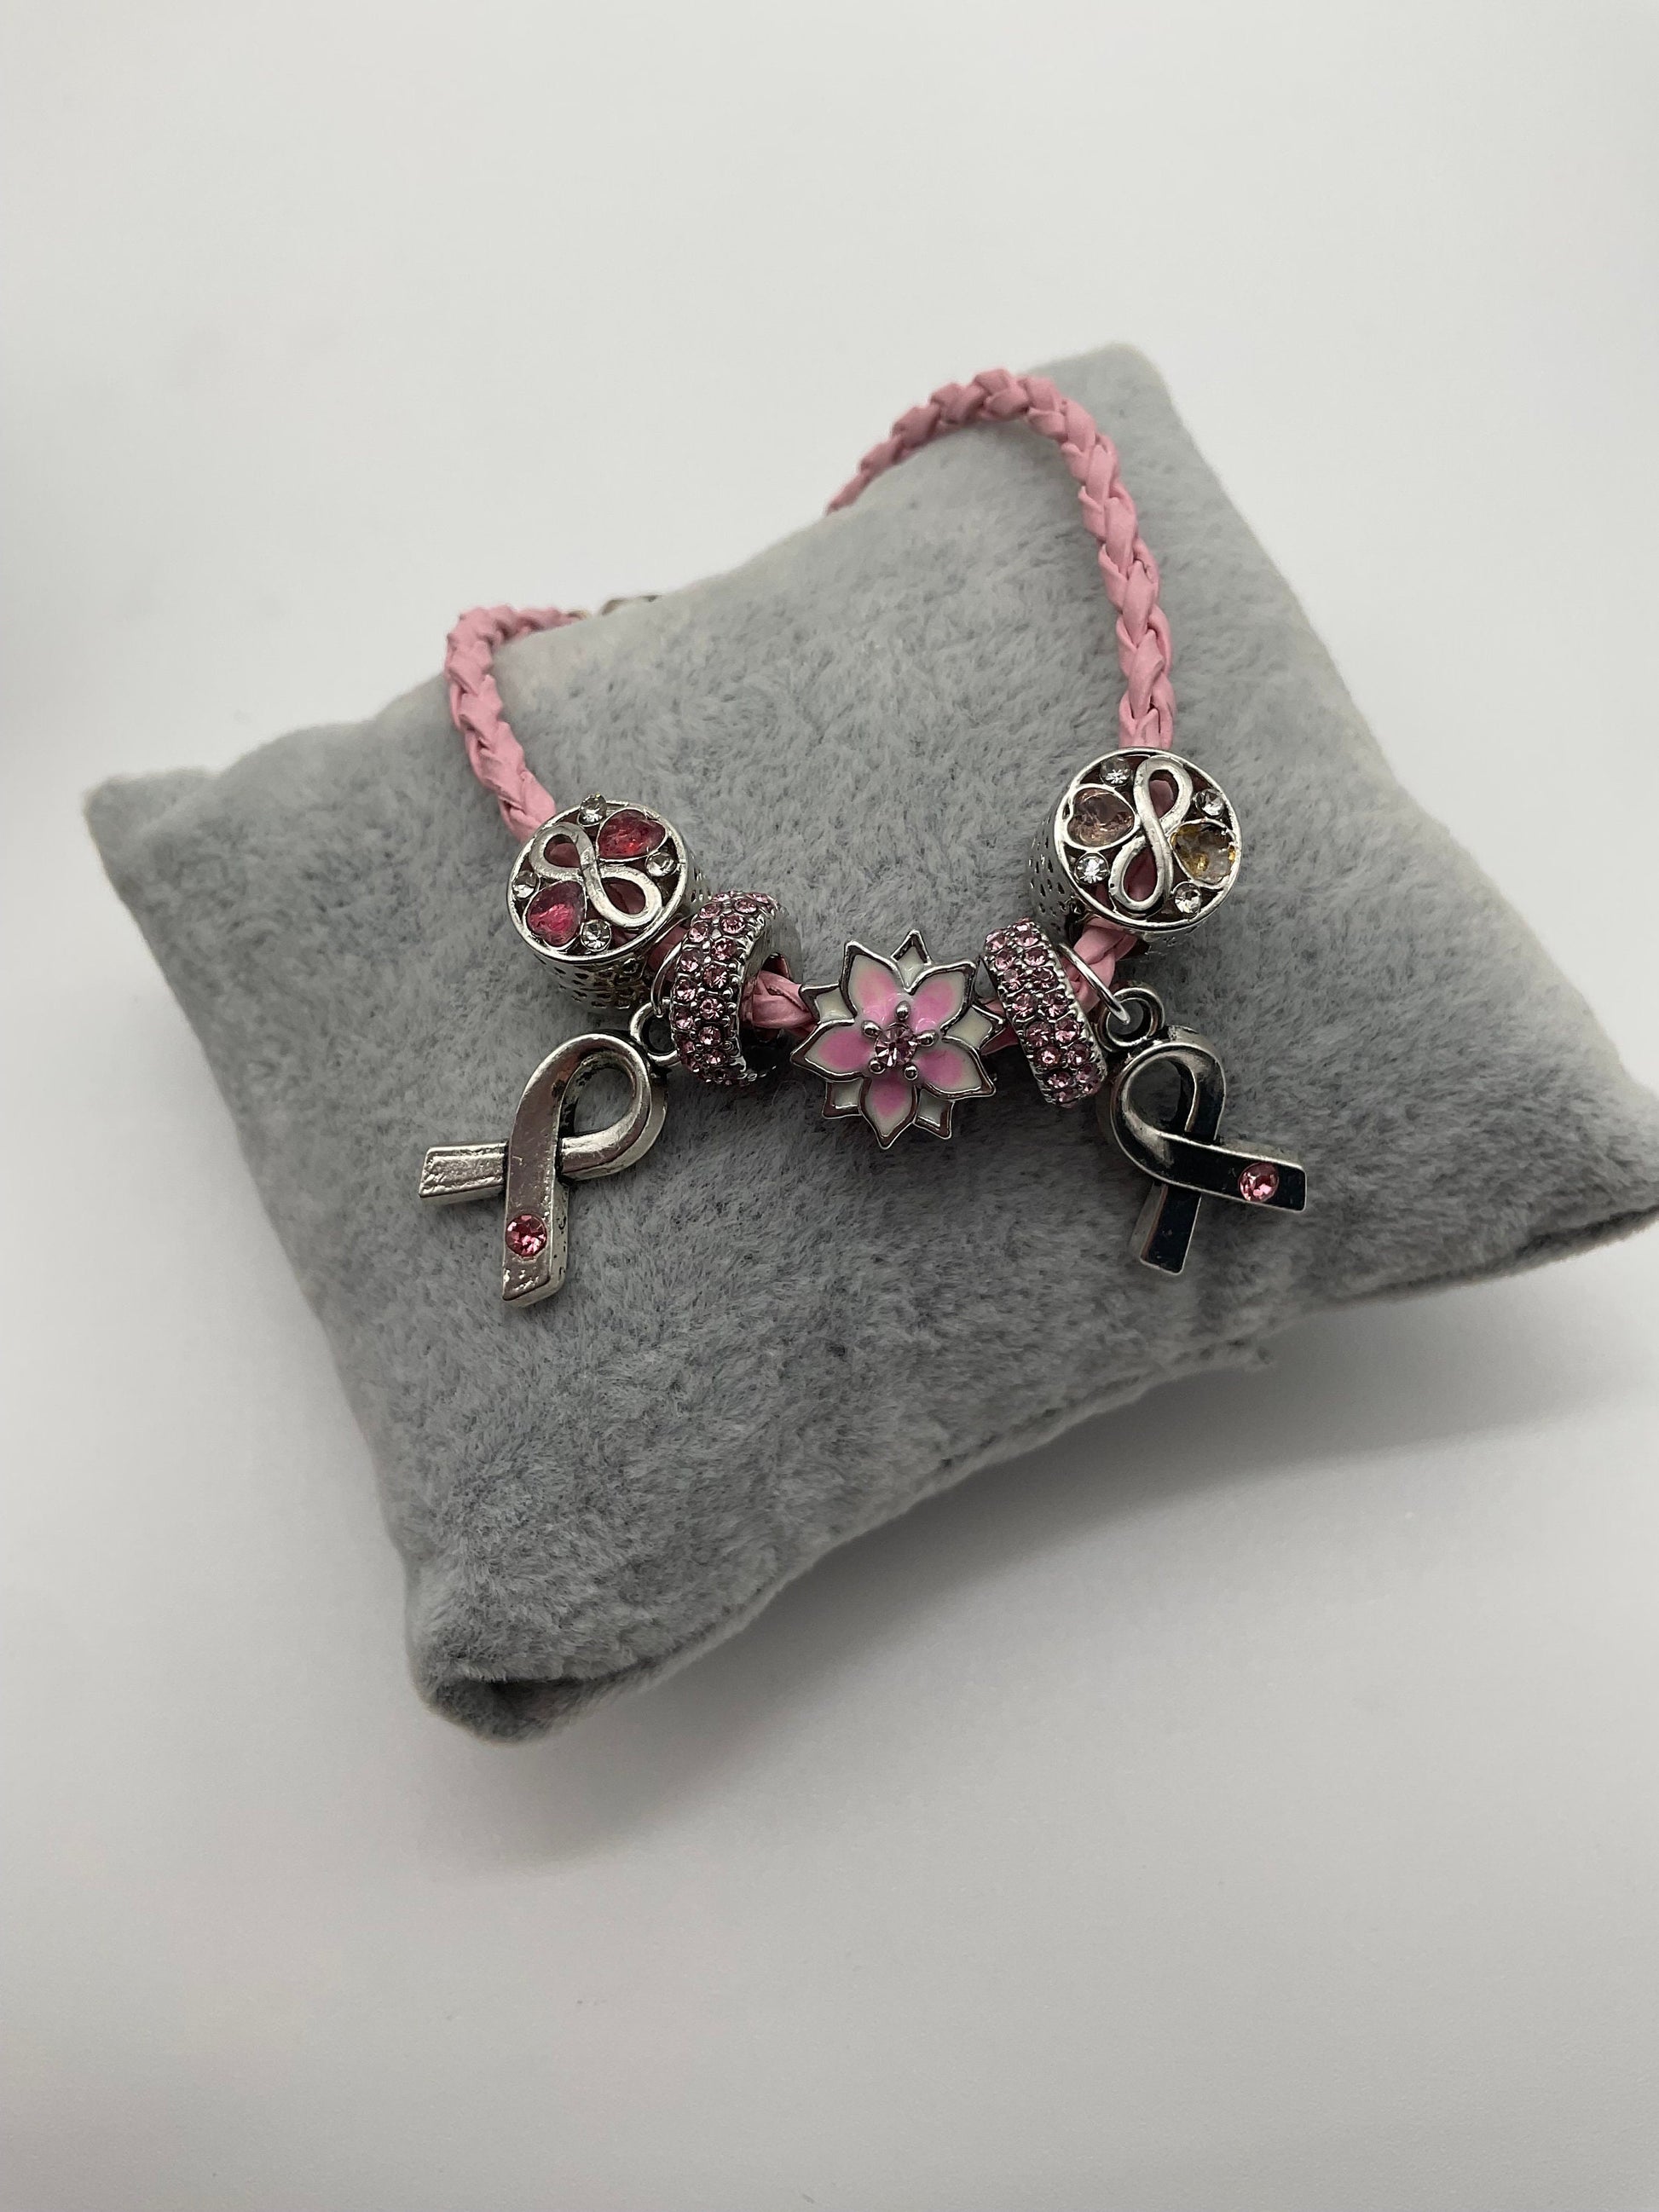 Breast Cancer Awareness and Survivor Crystal Bracelet - Pandora Style